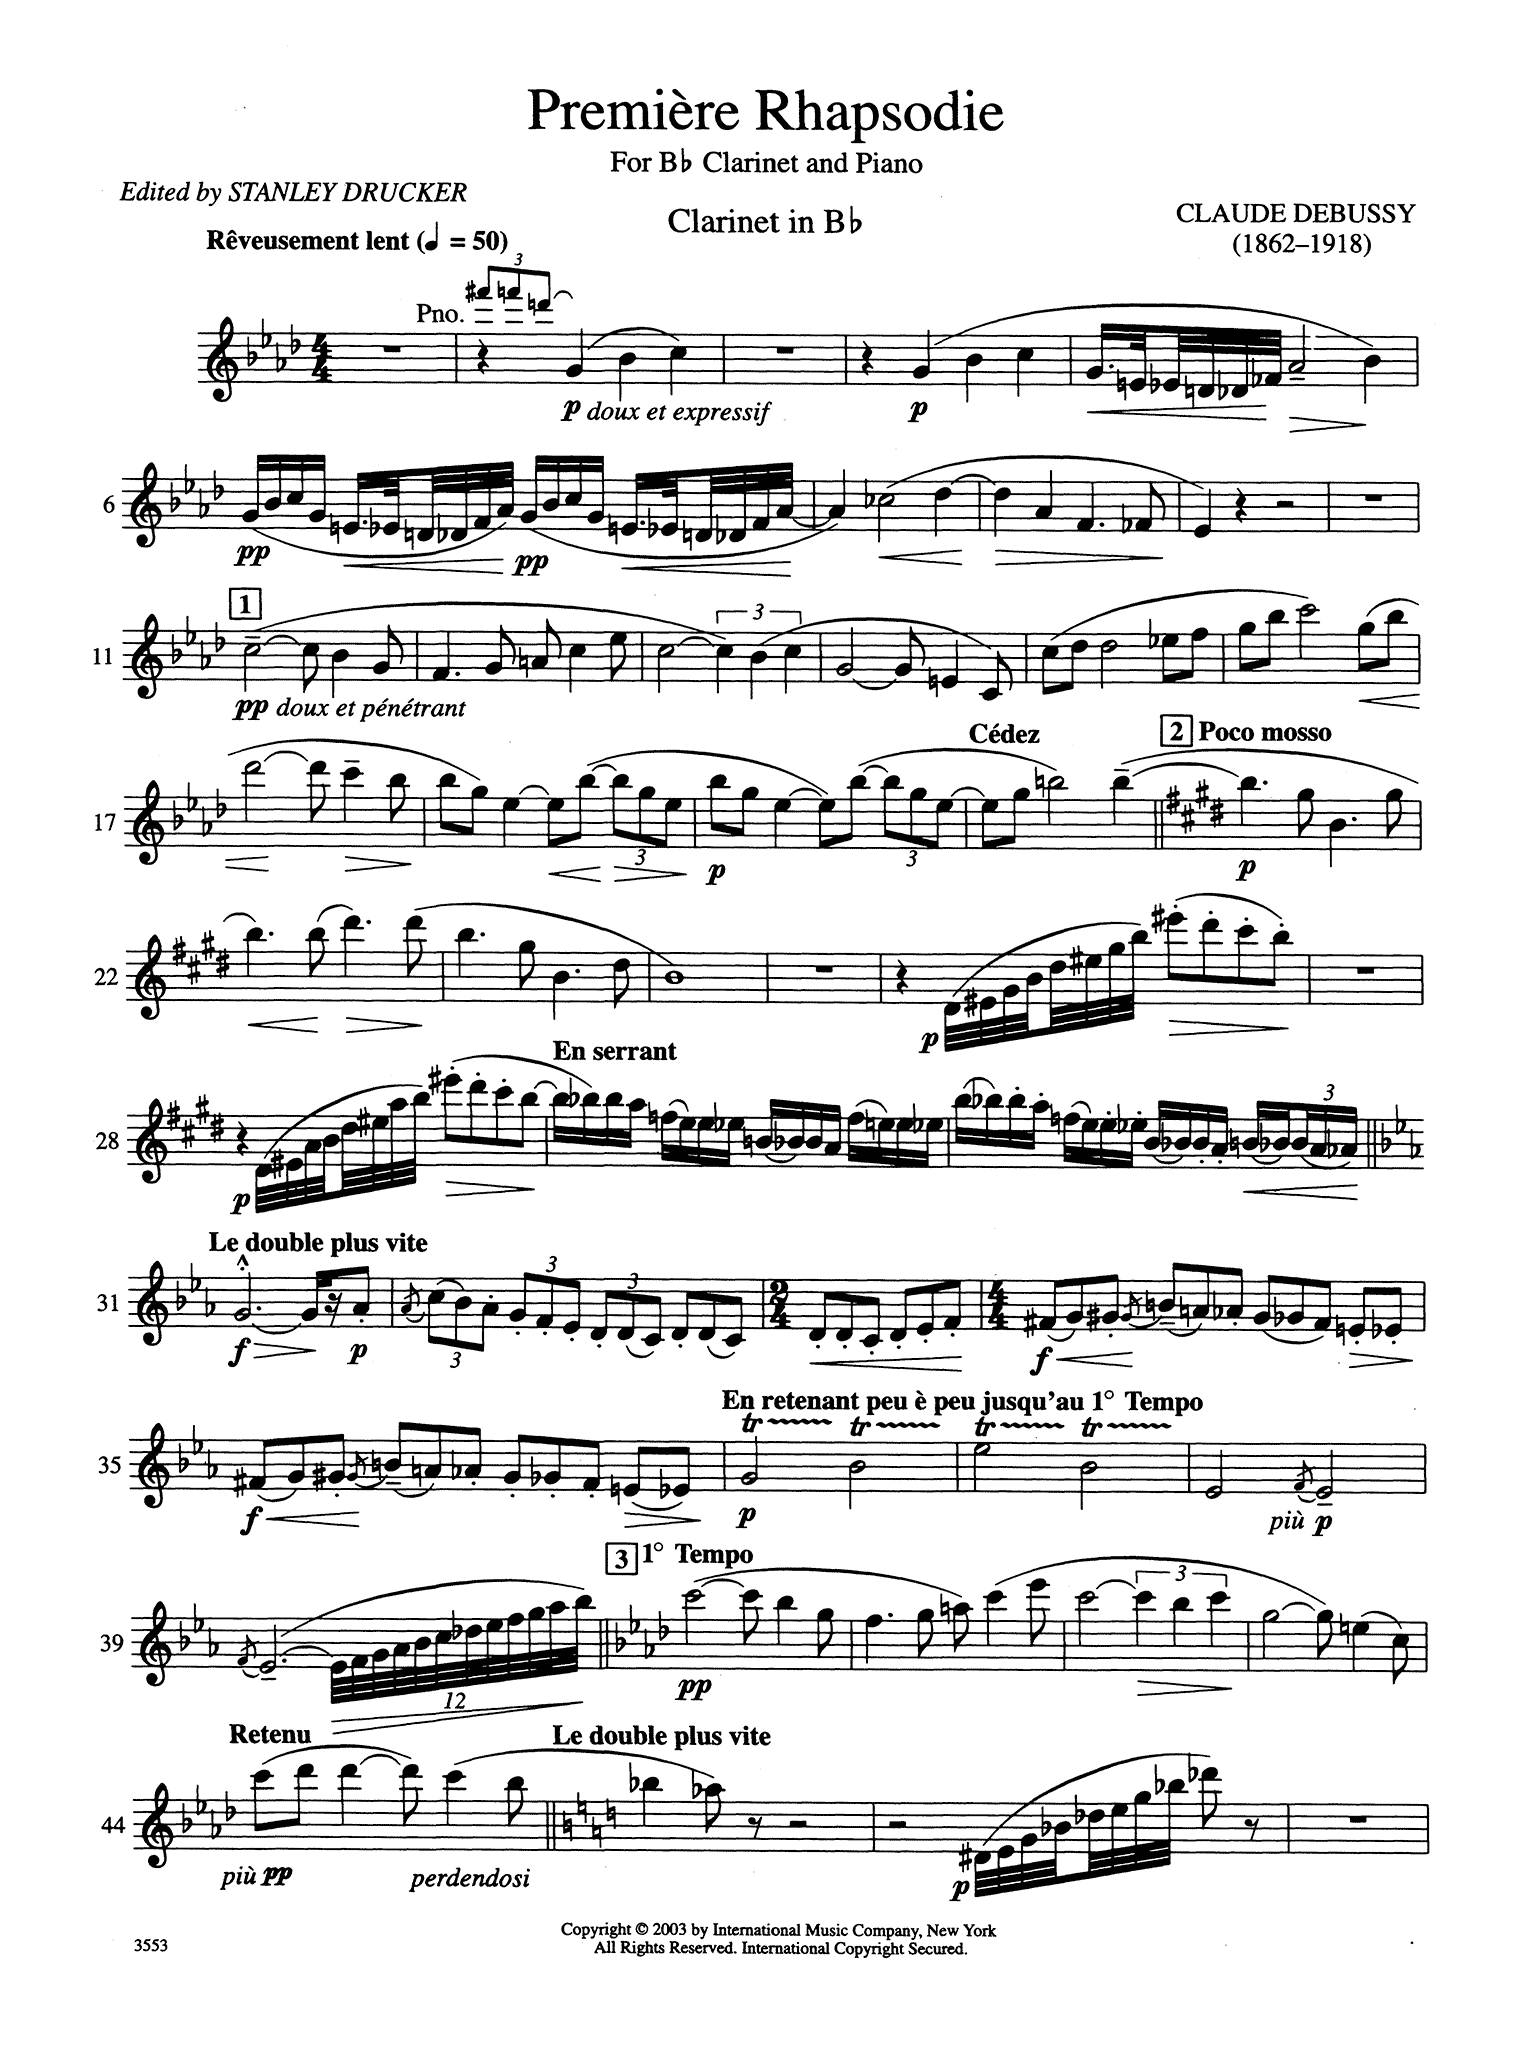 Première rhapsodie Clarinet part